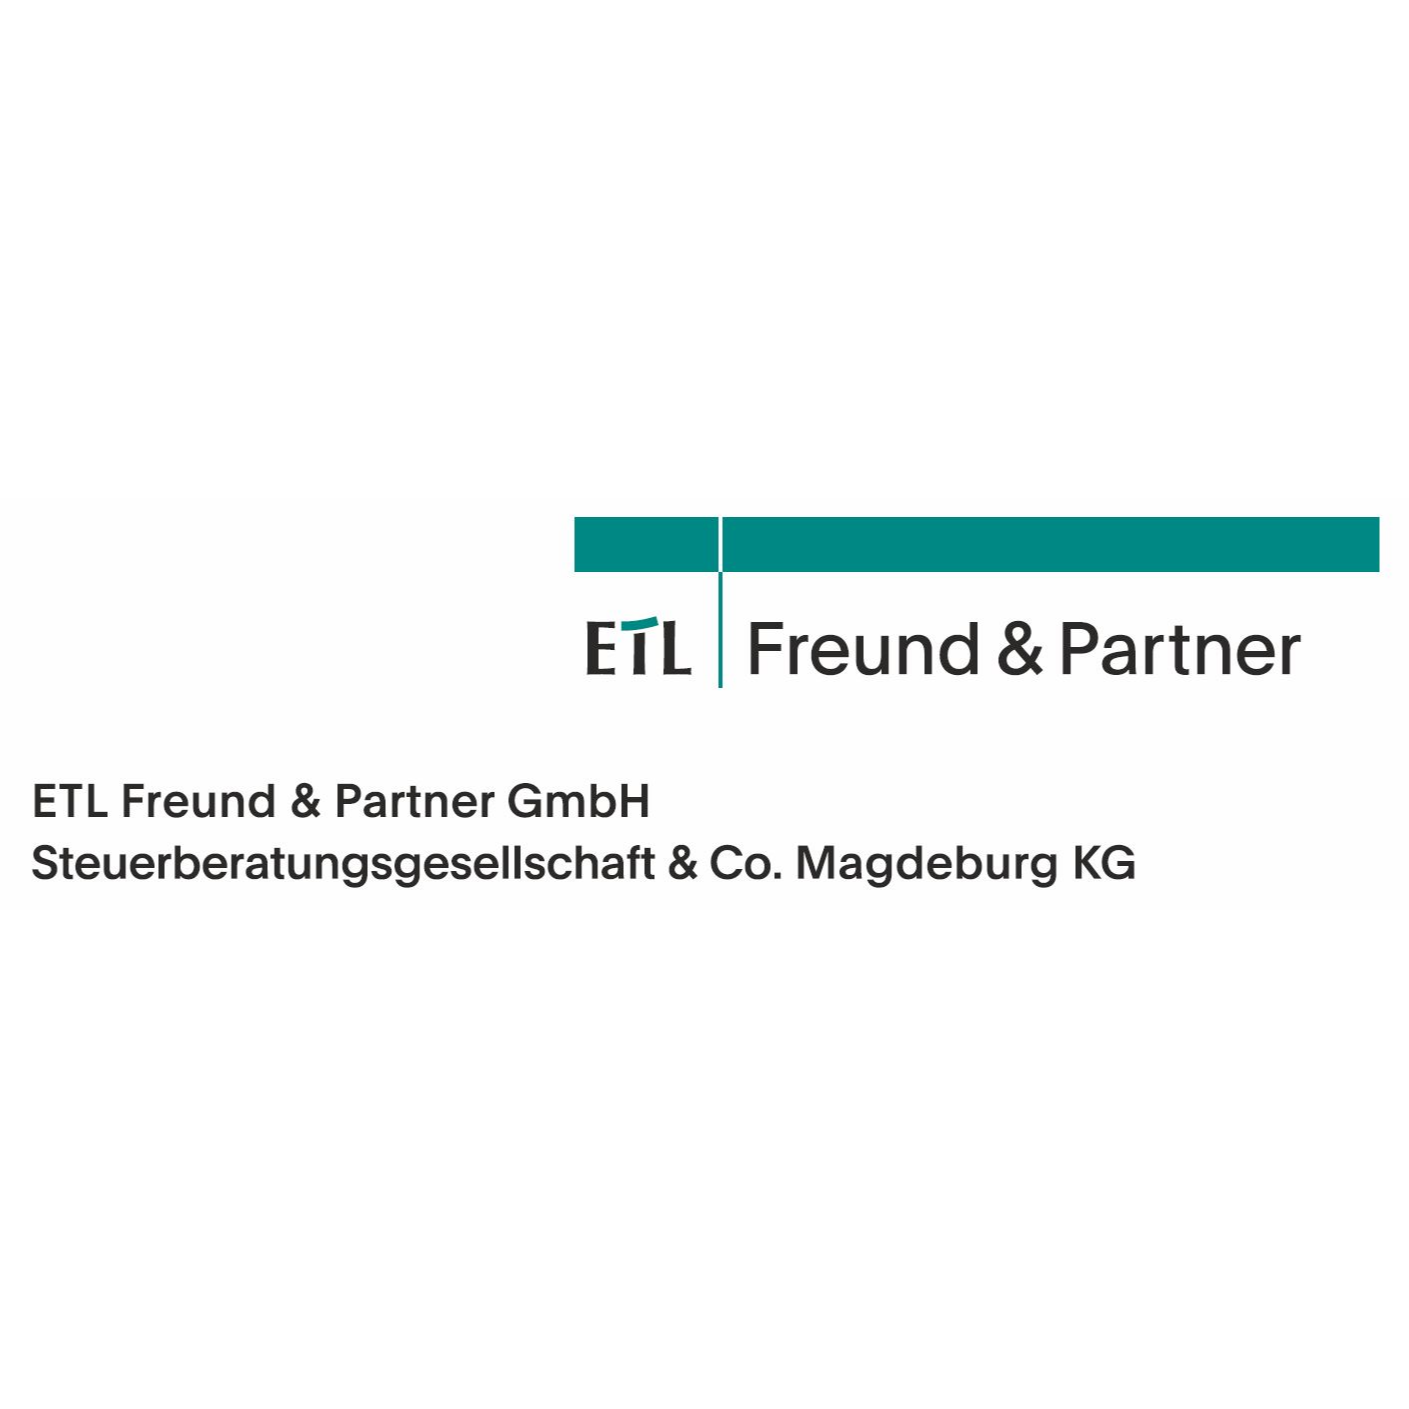 ETL Freund & Partner GmbH Steuerberatungsgesellschaft & Co. Magdeburg KG